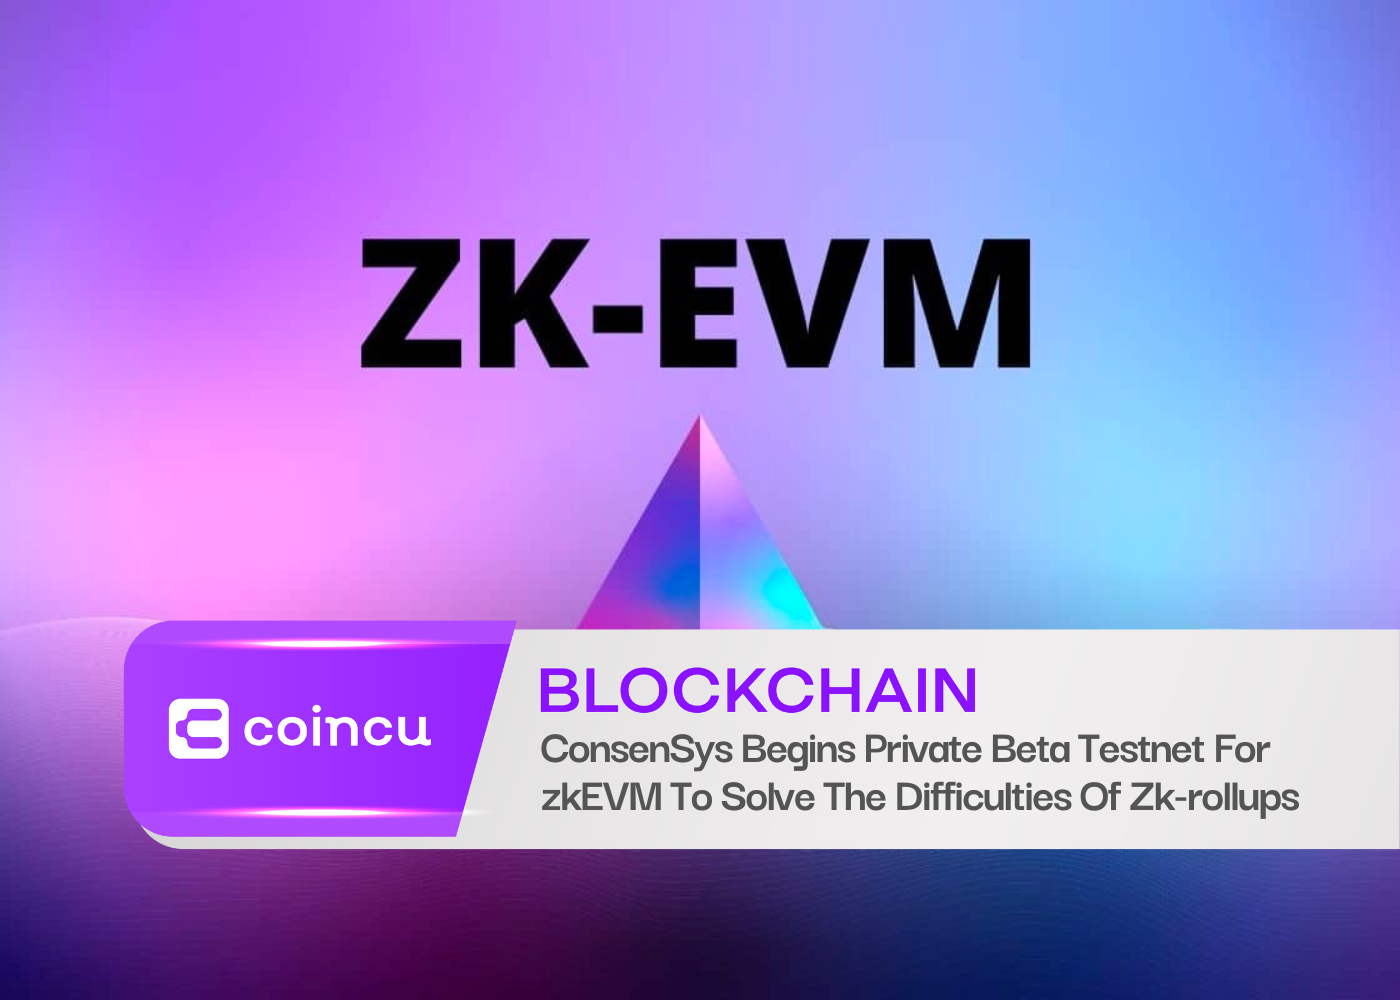 ConsenSys startet privates Beta-Testnetz für zkEVM, um die Schwierigkeiten von Zk-Rollups zu lösen